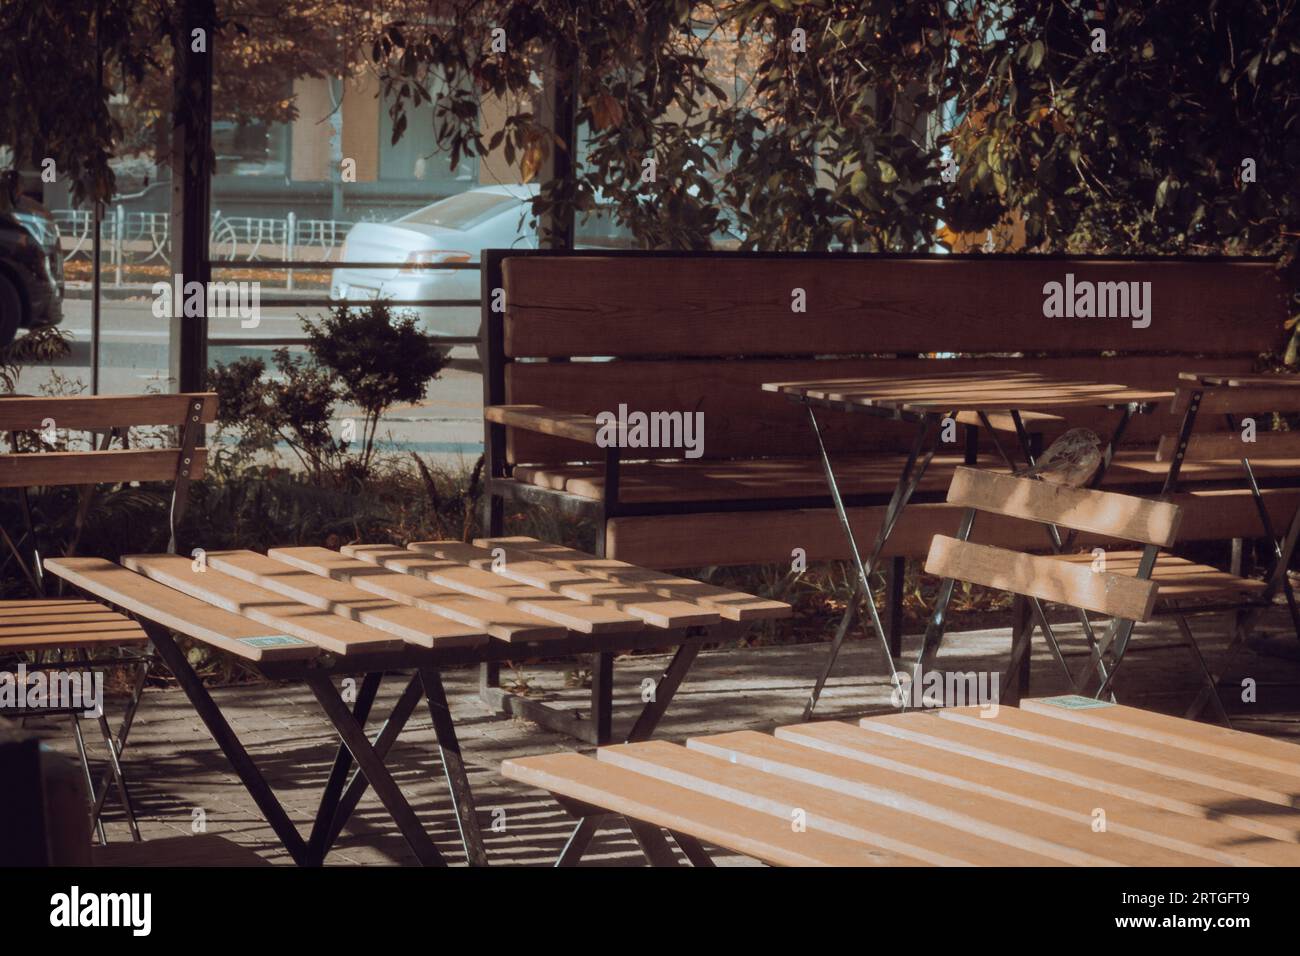 Straßencafe. Moderner öffentlicher Ort in der Stadt. Holzstühle und -Tisch auf der Terrasse unter den Bäumen. Gartenmöbel. Moderne Lebensstile. Terrassendekoration. Stockfoto